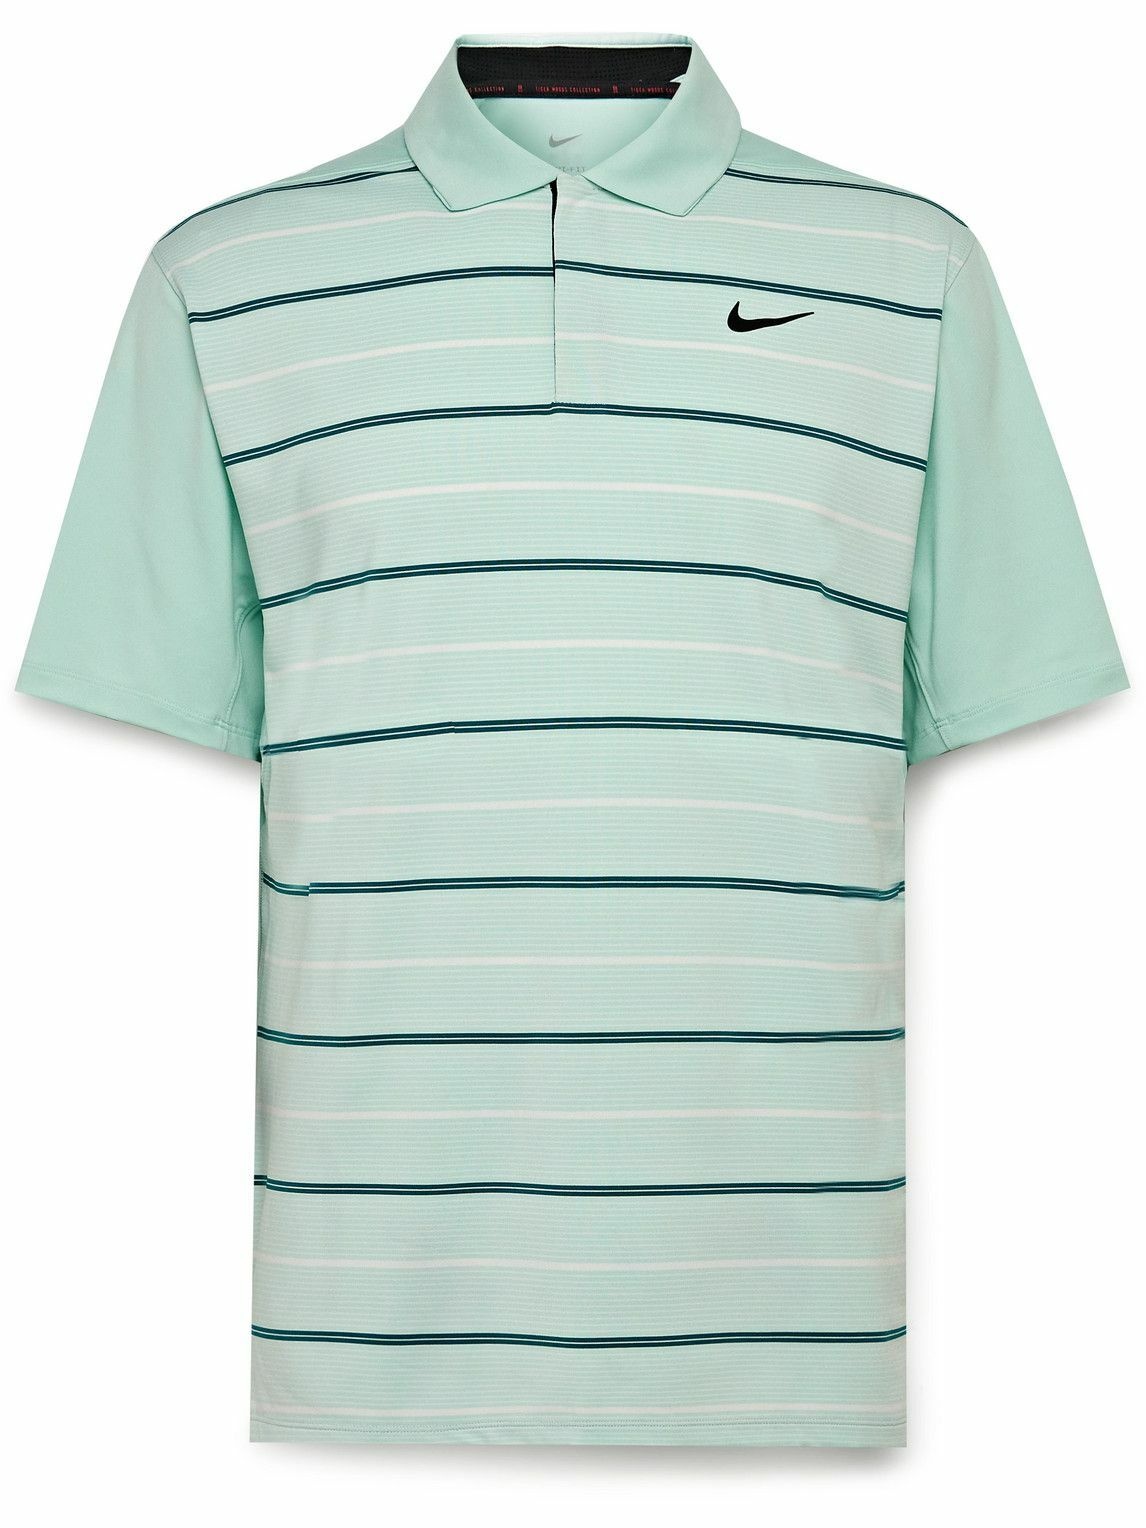 Nike Golf - Tiger Woods Logo-Print Striped Dri-FIT Golf Shirt - Green ...